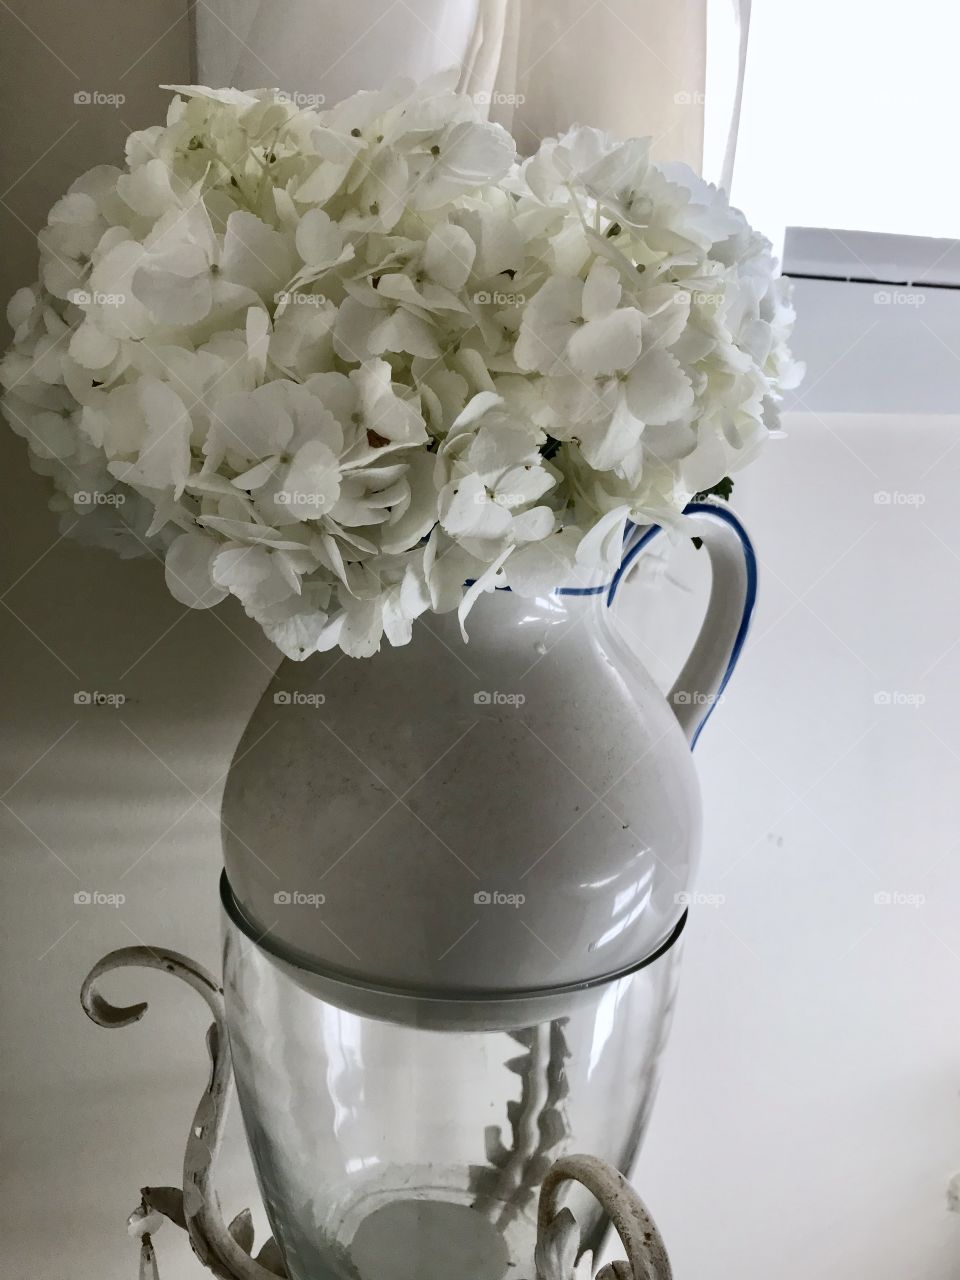 White hydrangeas milk pitcher still life